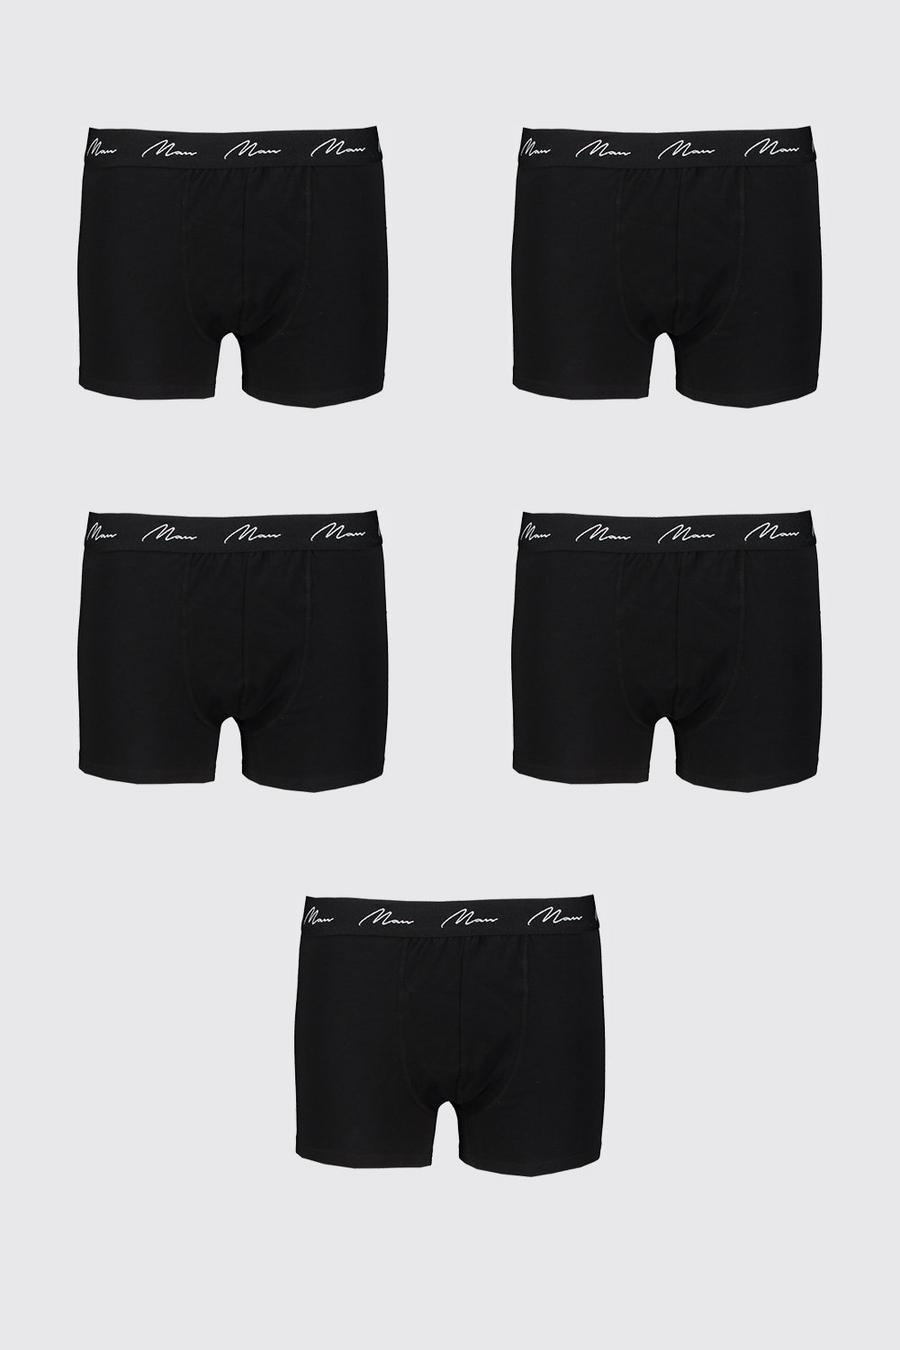 Plus 5er-Pack Boxershirts mit MAN-Schriftzug, Schwarz noir